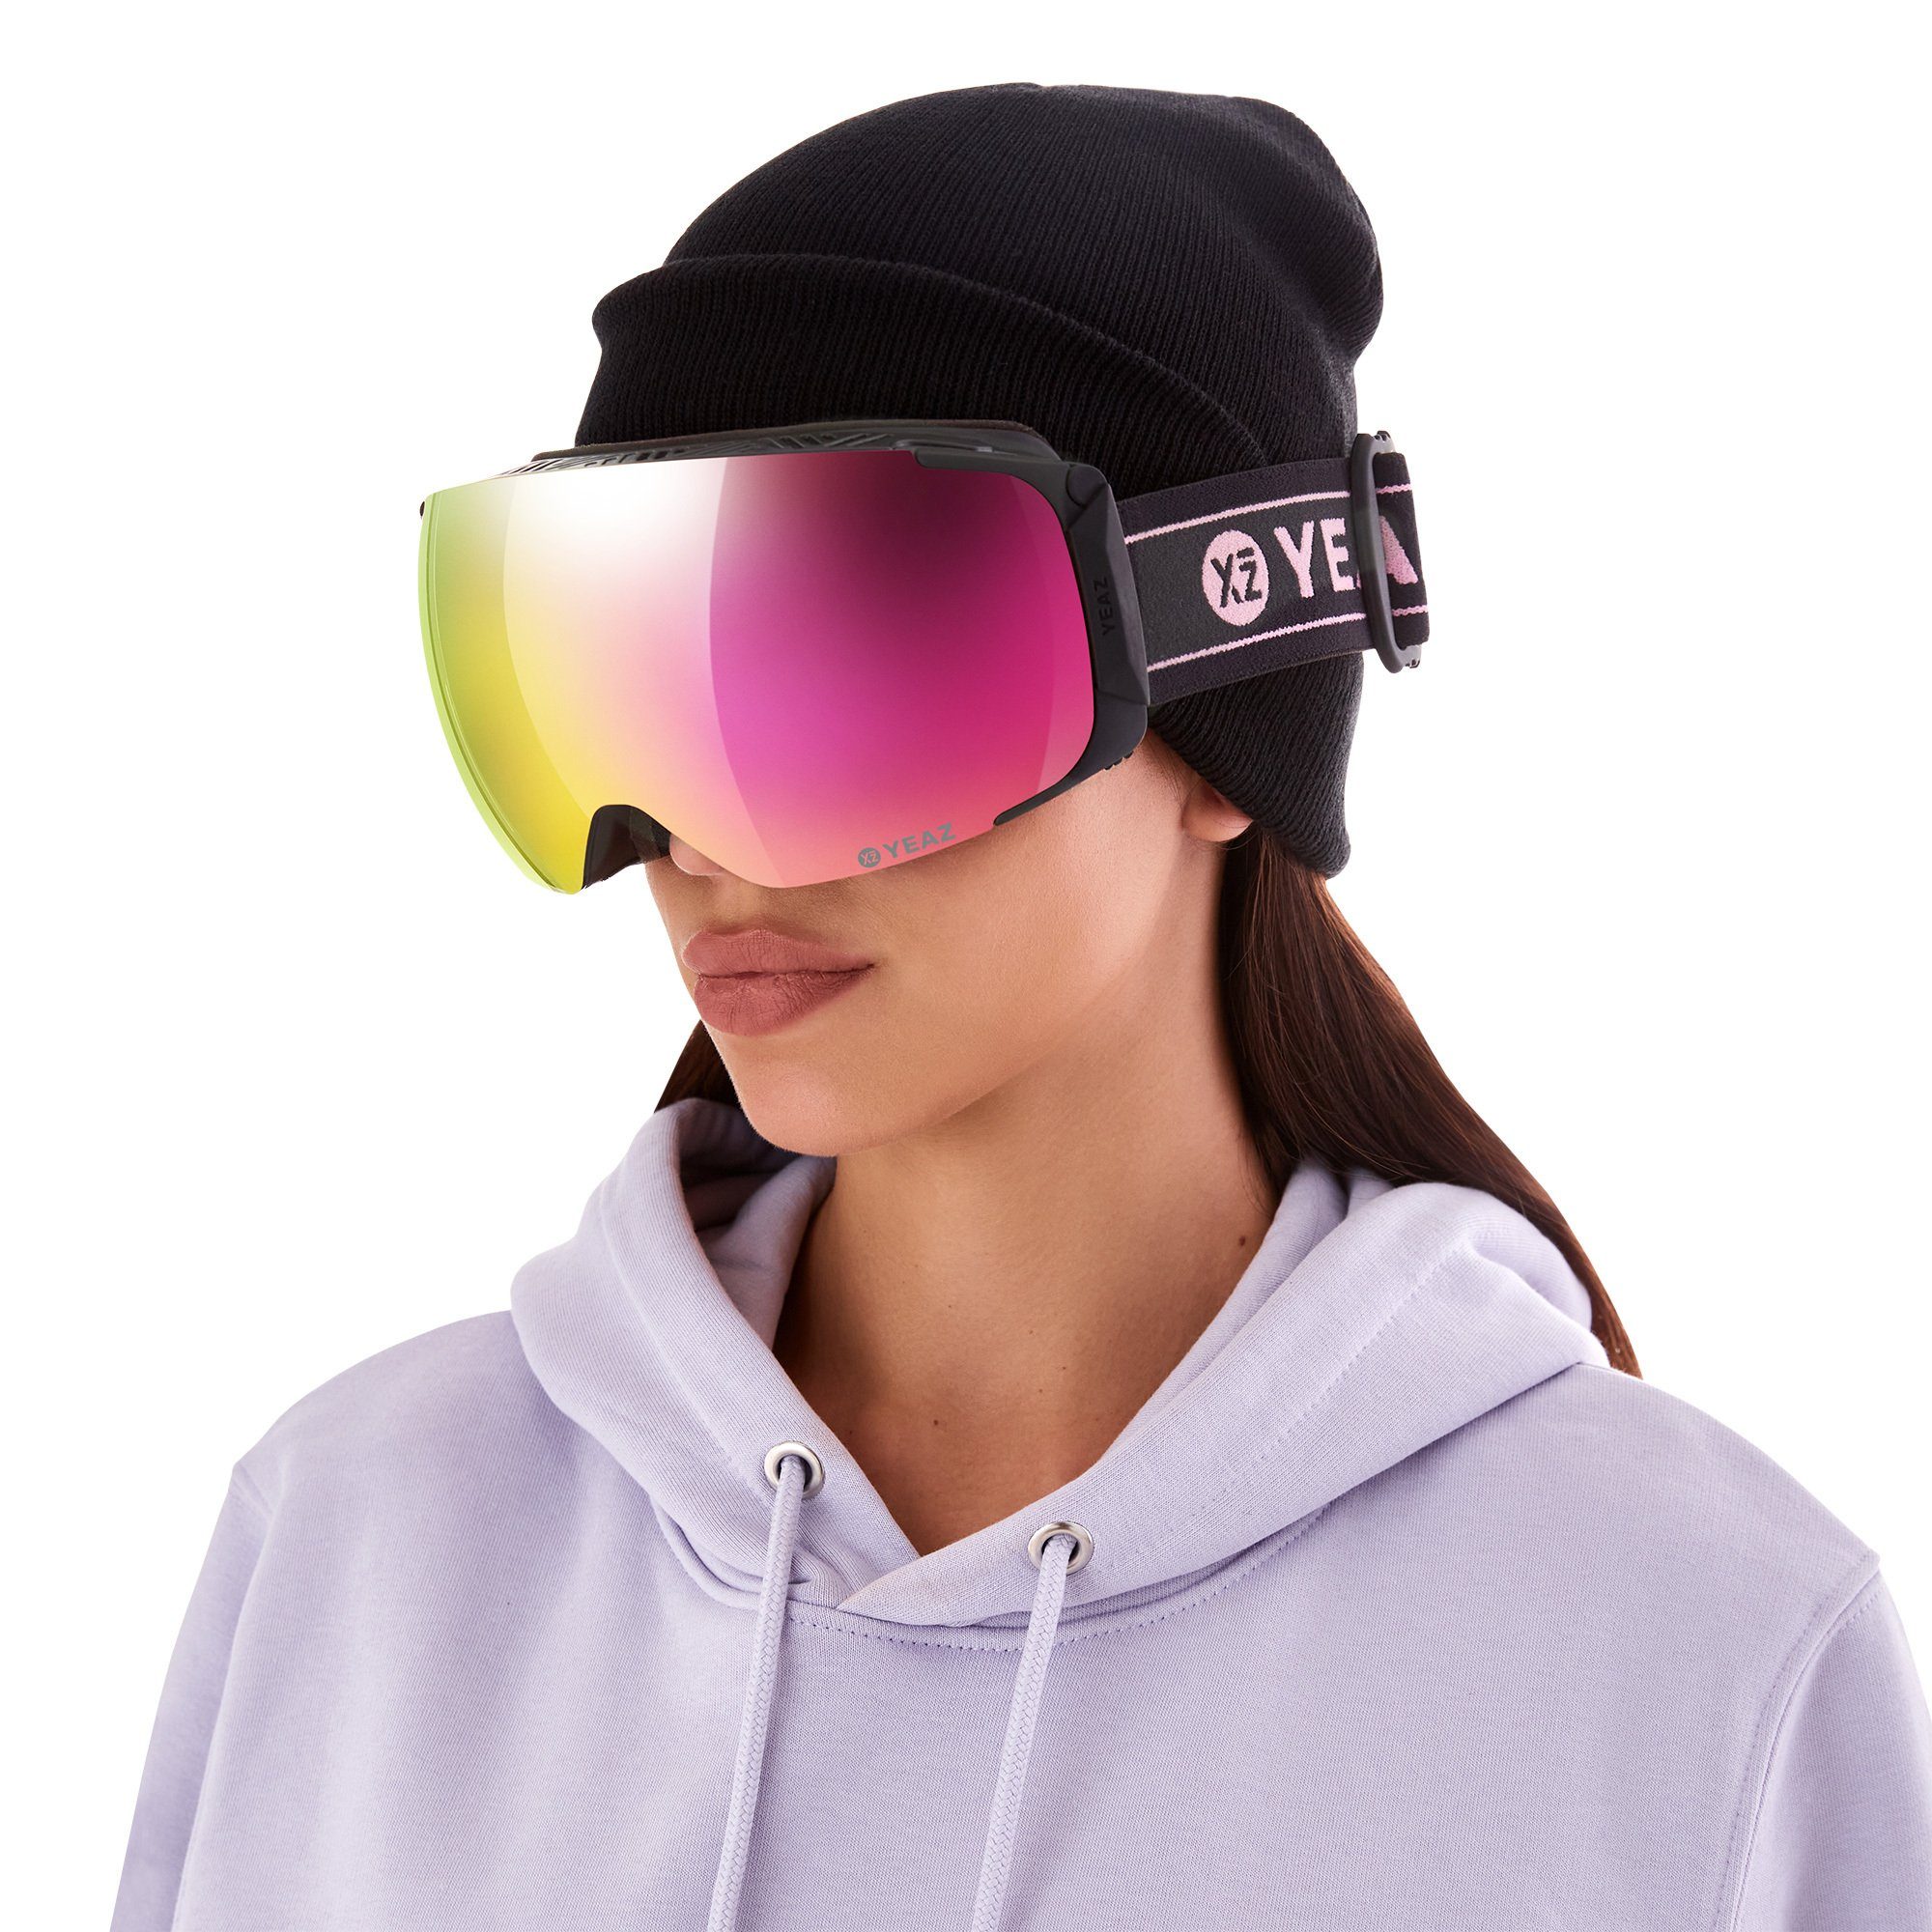 YEAZ Skibrille TWEAK-X ski- Premium-Ski- für Erwachsene snowboard-brille, und und Snowboardbrille und Jugendliche